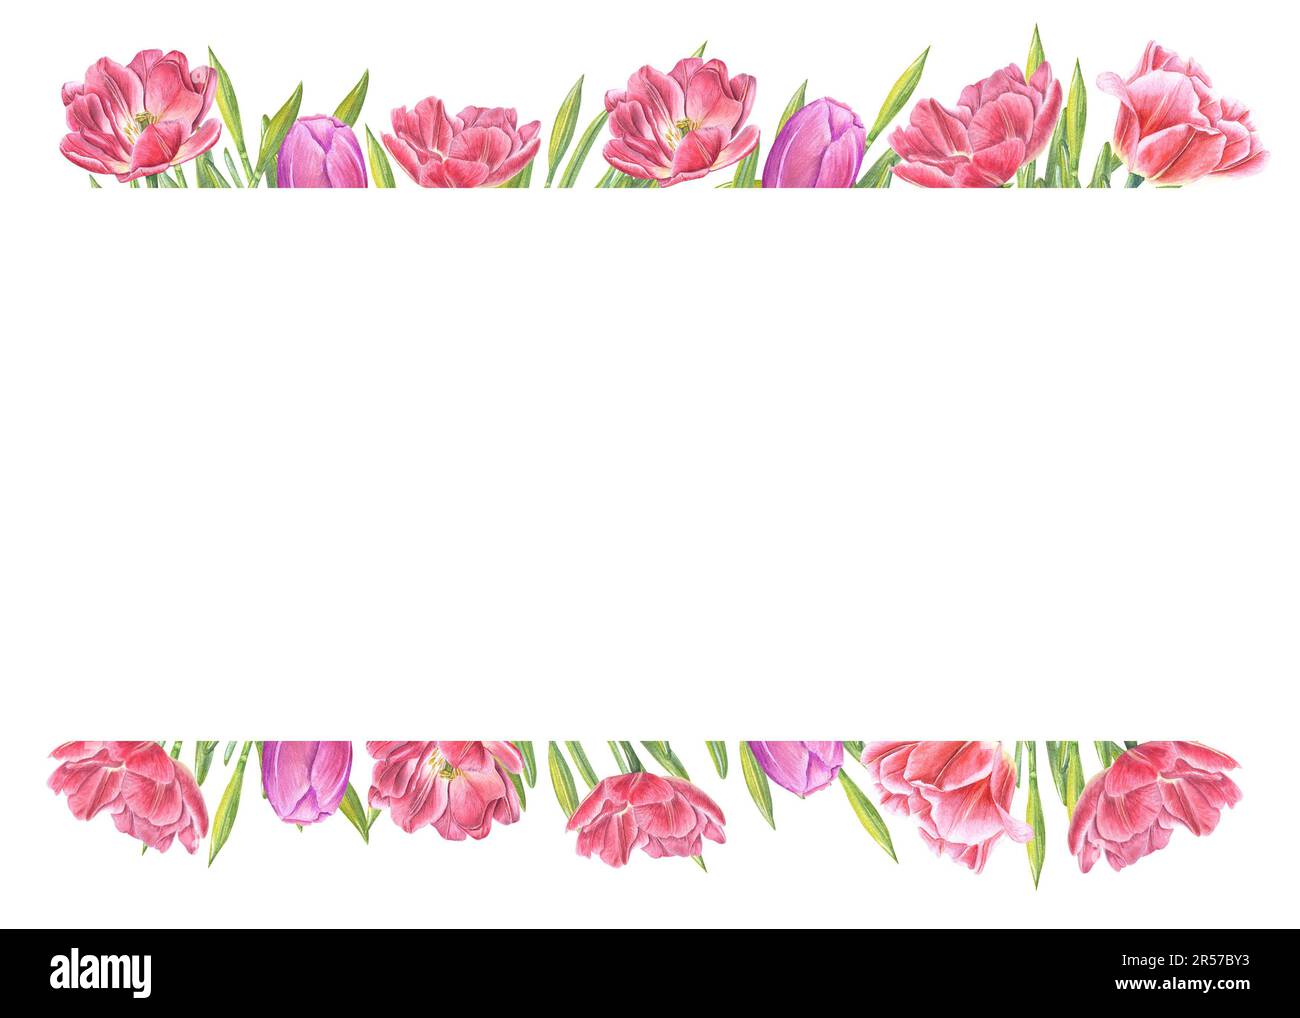 Wässriger horizontaler Rahmen verschiedener rosafarbener Tulpen mit isoliertem Kopierbereich auf weißem Hintergrund. Botanische Illustration zum Erstellen eines Grußdesigns Stockfoto